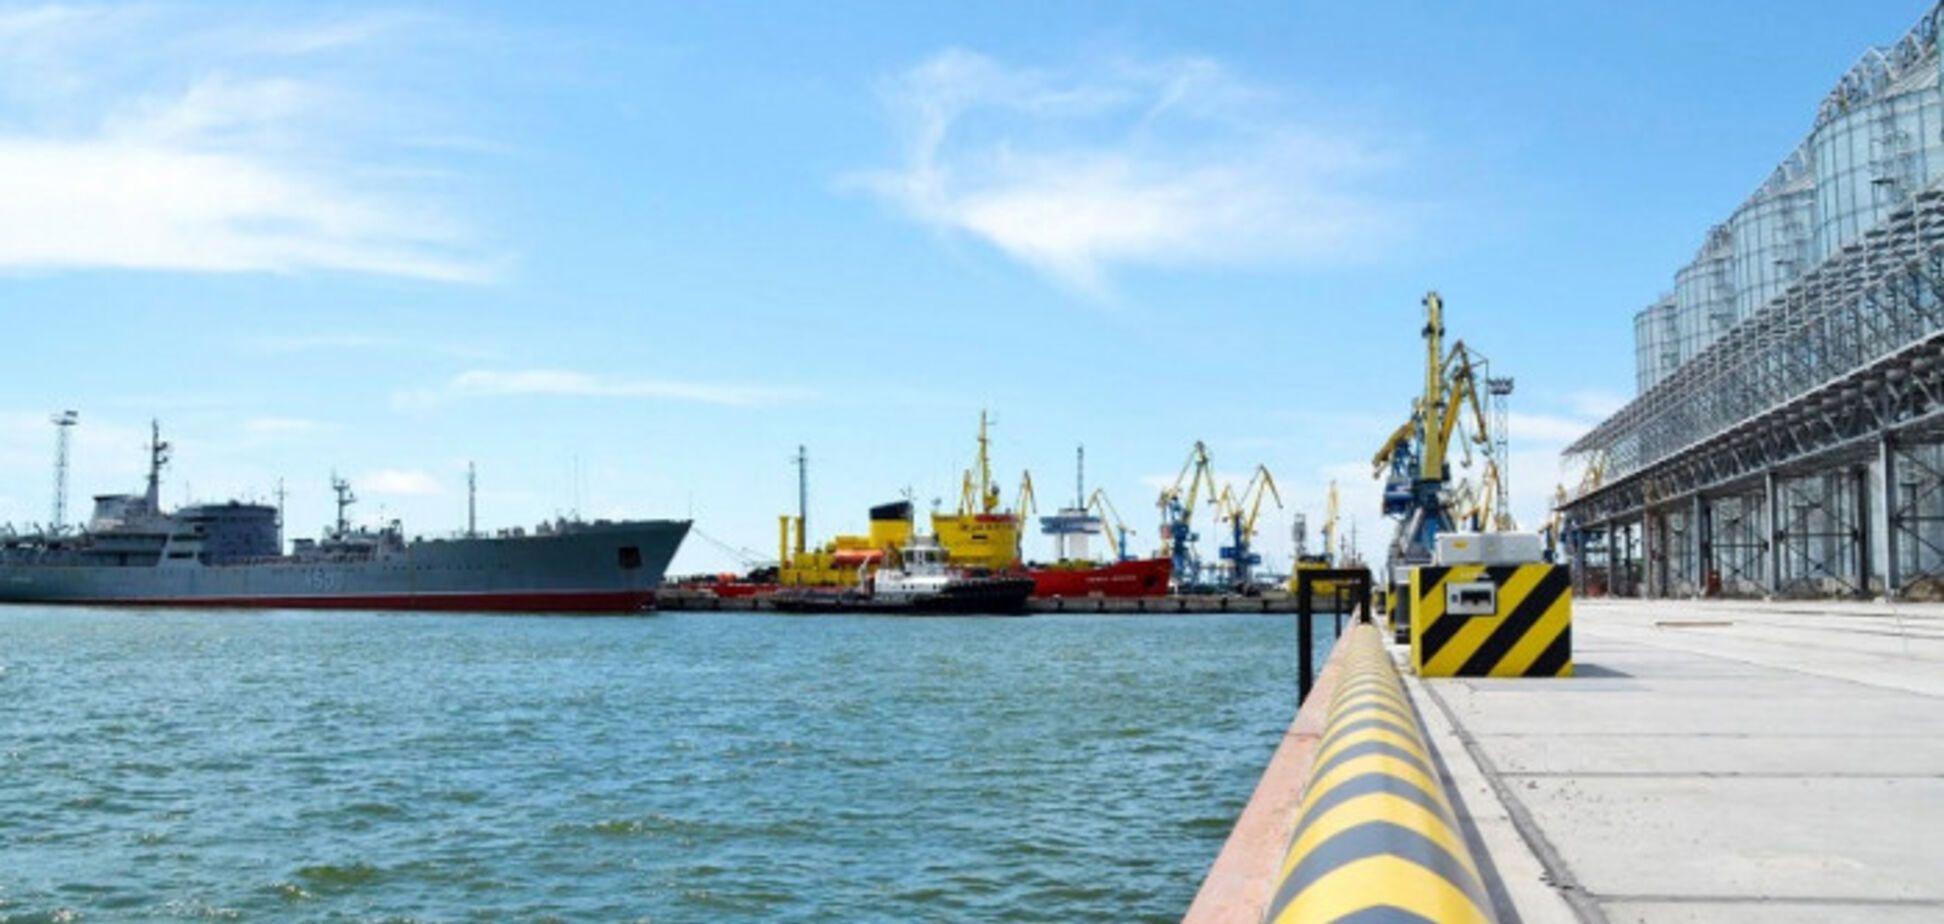 Для Украины важно разблокировать морские порты и восстановить объемы промпроизводства, – Новак